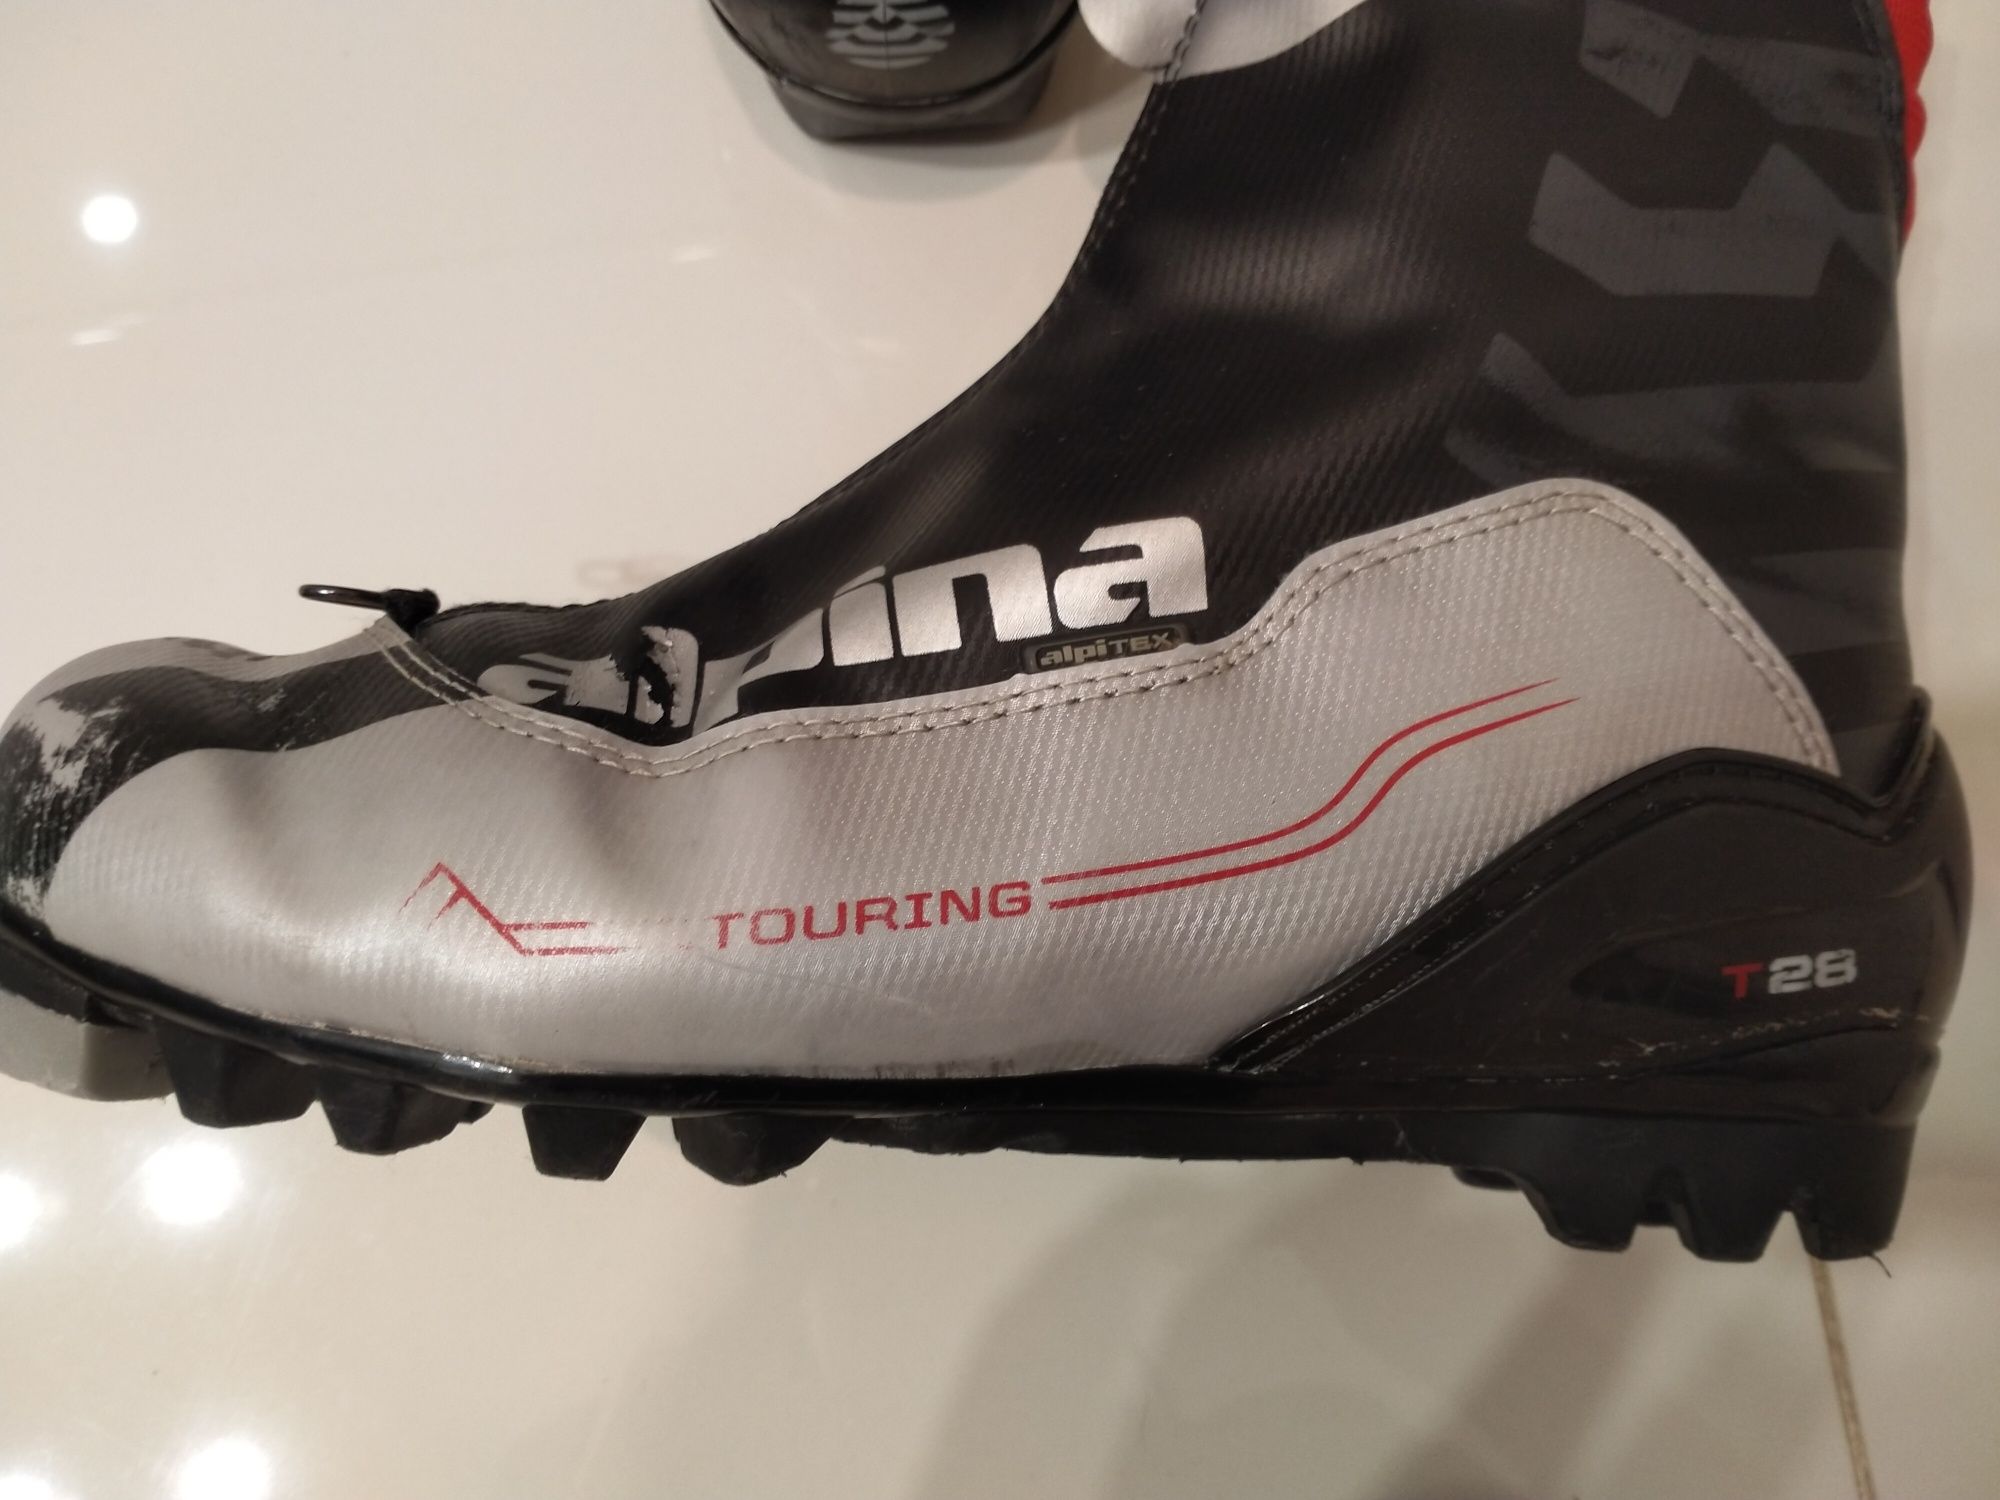 Buty biegowe narciarskie Alpina Touring T28 r39